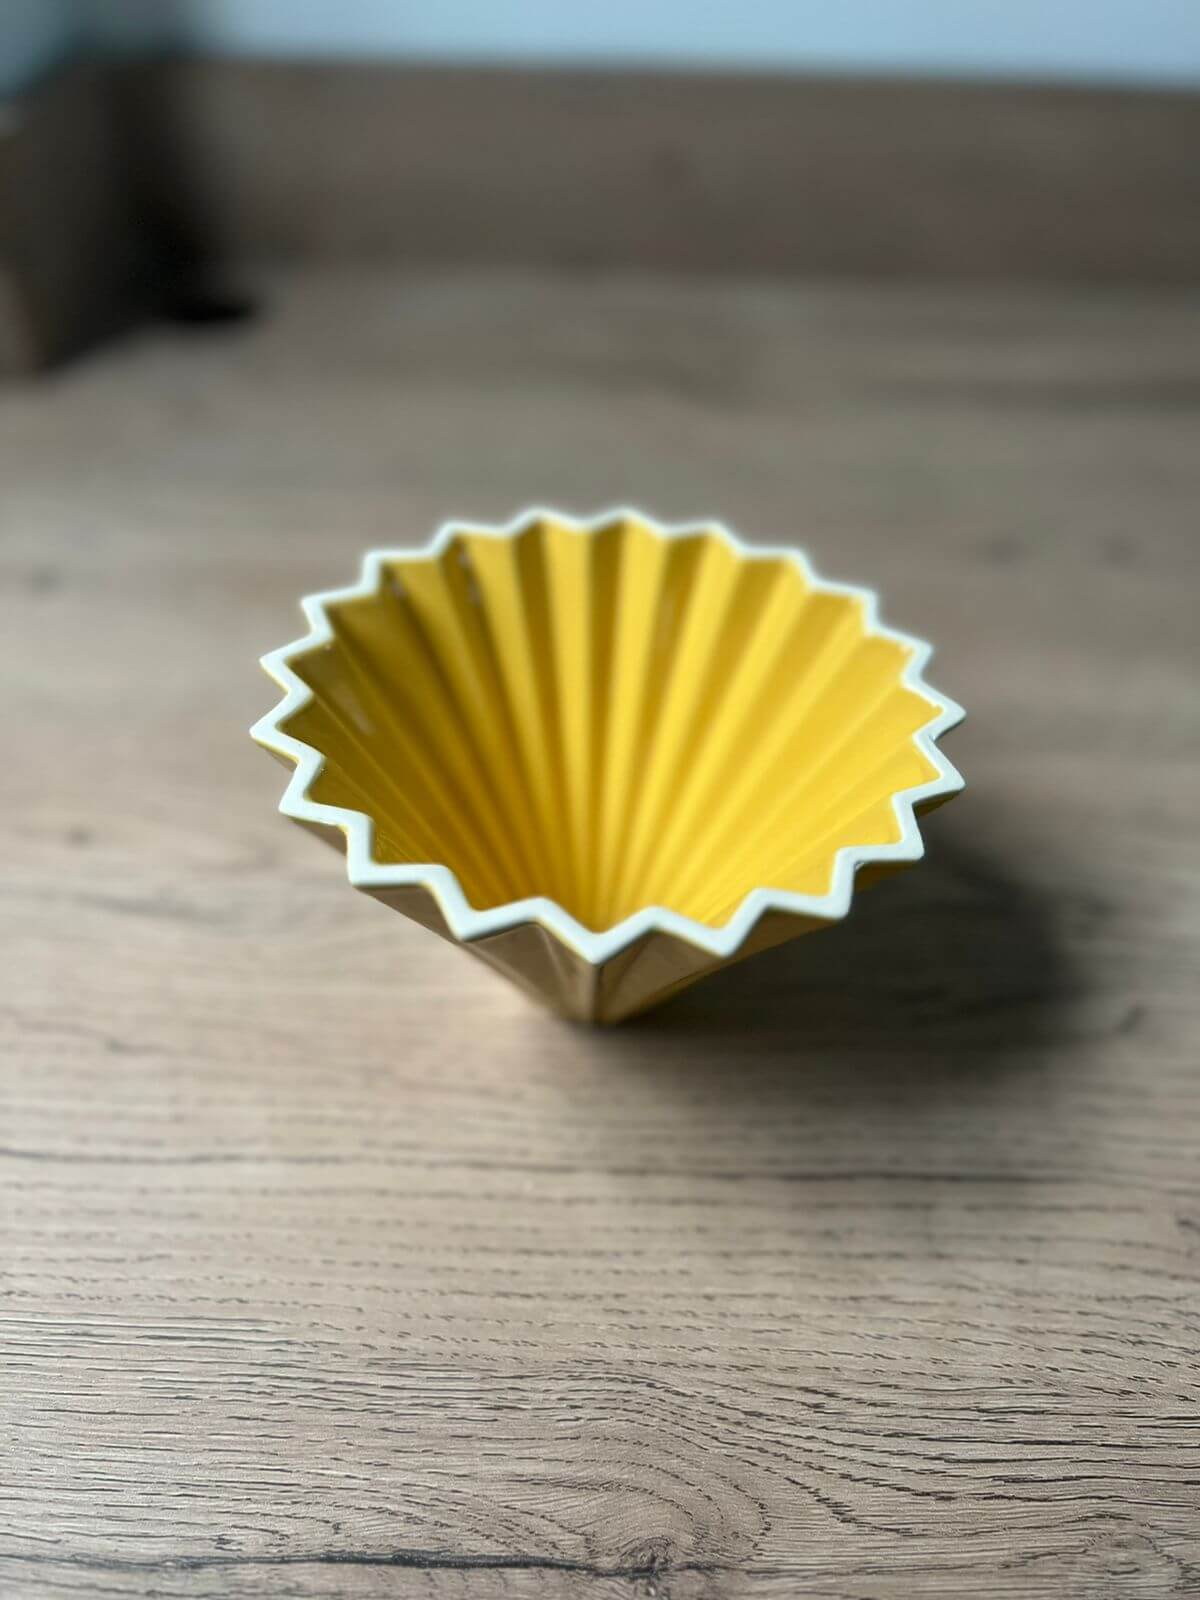 Eleva tu ritual de café con el V60 Origami. Este gotero de cerámica tallado en porcelana te permite crear obras maestras con tu café. Prepara de manera profesional de 1 a 4 tazas, sumergiéndote en una experiencia única de filtrado y sabor.